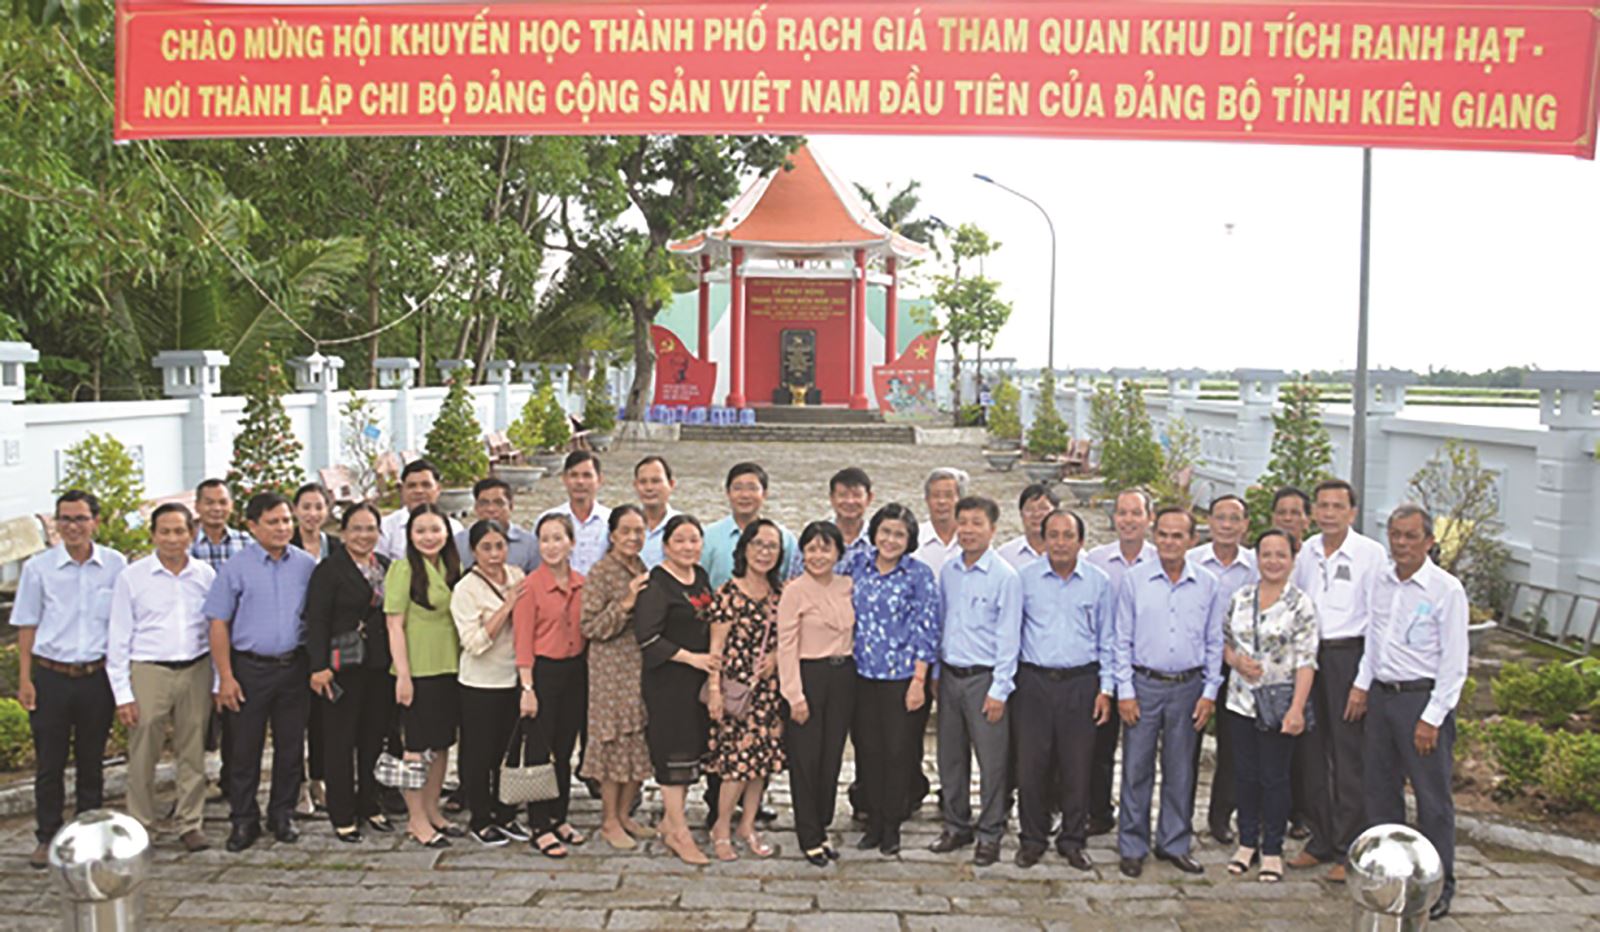 Vĩnh Thuận (Kiên Giang) đoàn kết xây dựng đời sống văn hóa